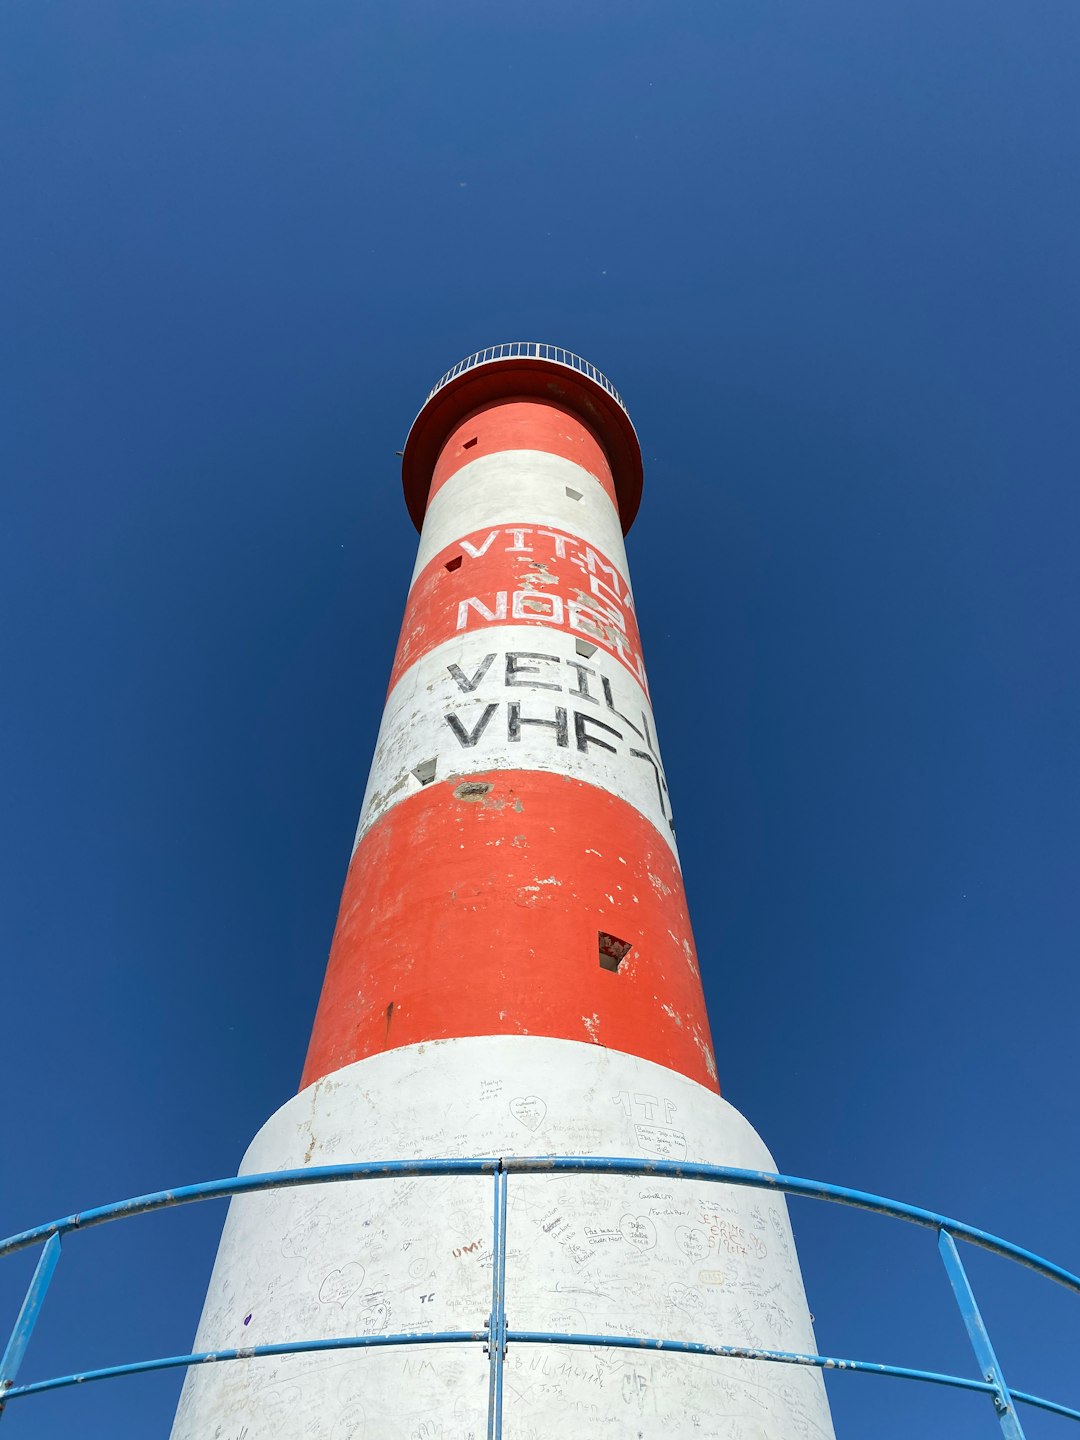 Lighthouse photo spot Narbonnaise en Méditerranée Natural Regional Park France